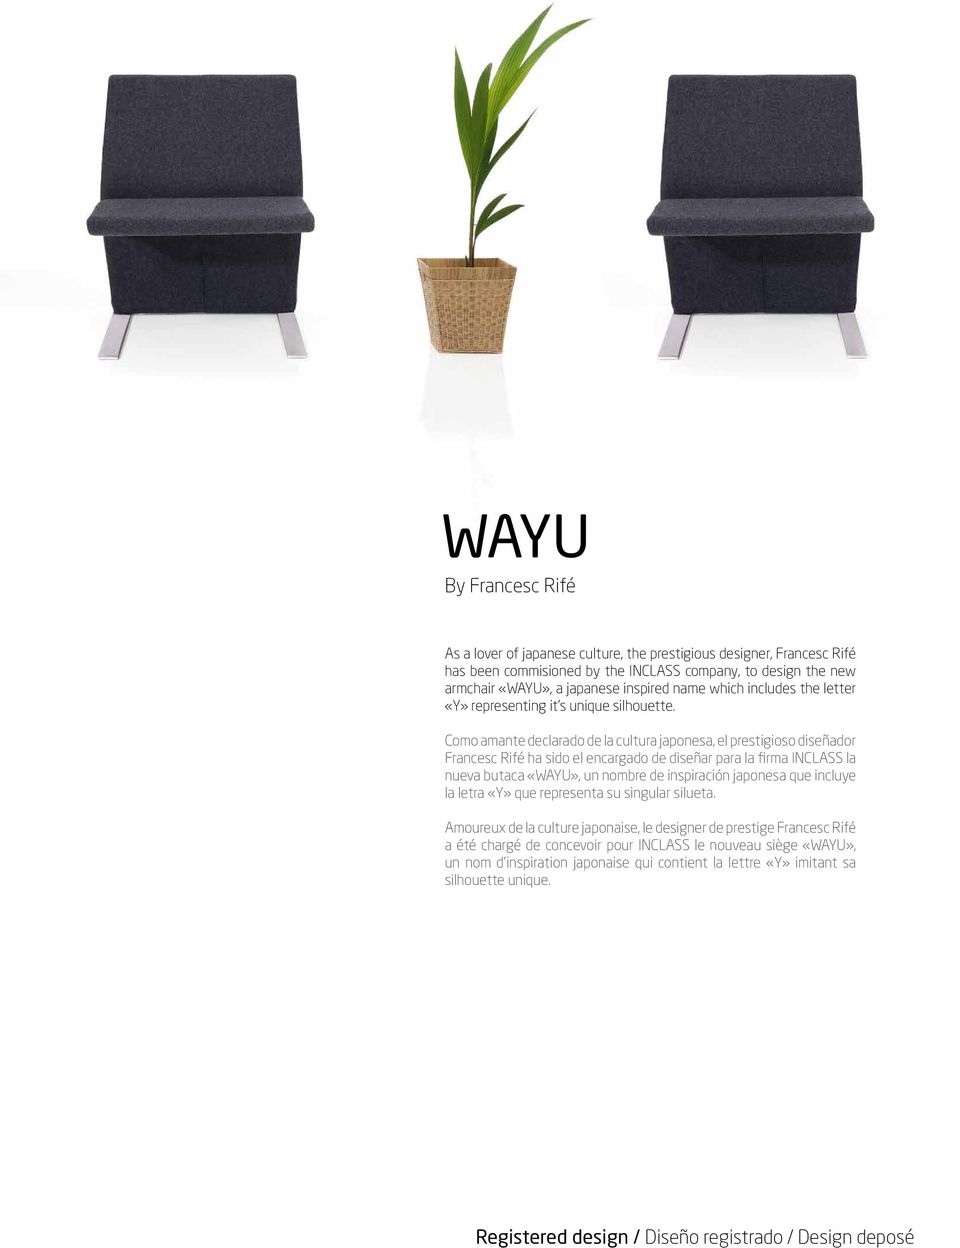 Como amante declarado de la cultura japonesa, el prestigioso diseñador Francesc Rifé ha sido el encargado de diseñar para la firma INCLASS la nueva butaca «WAYU», un nombre de inspiración japonesa